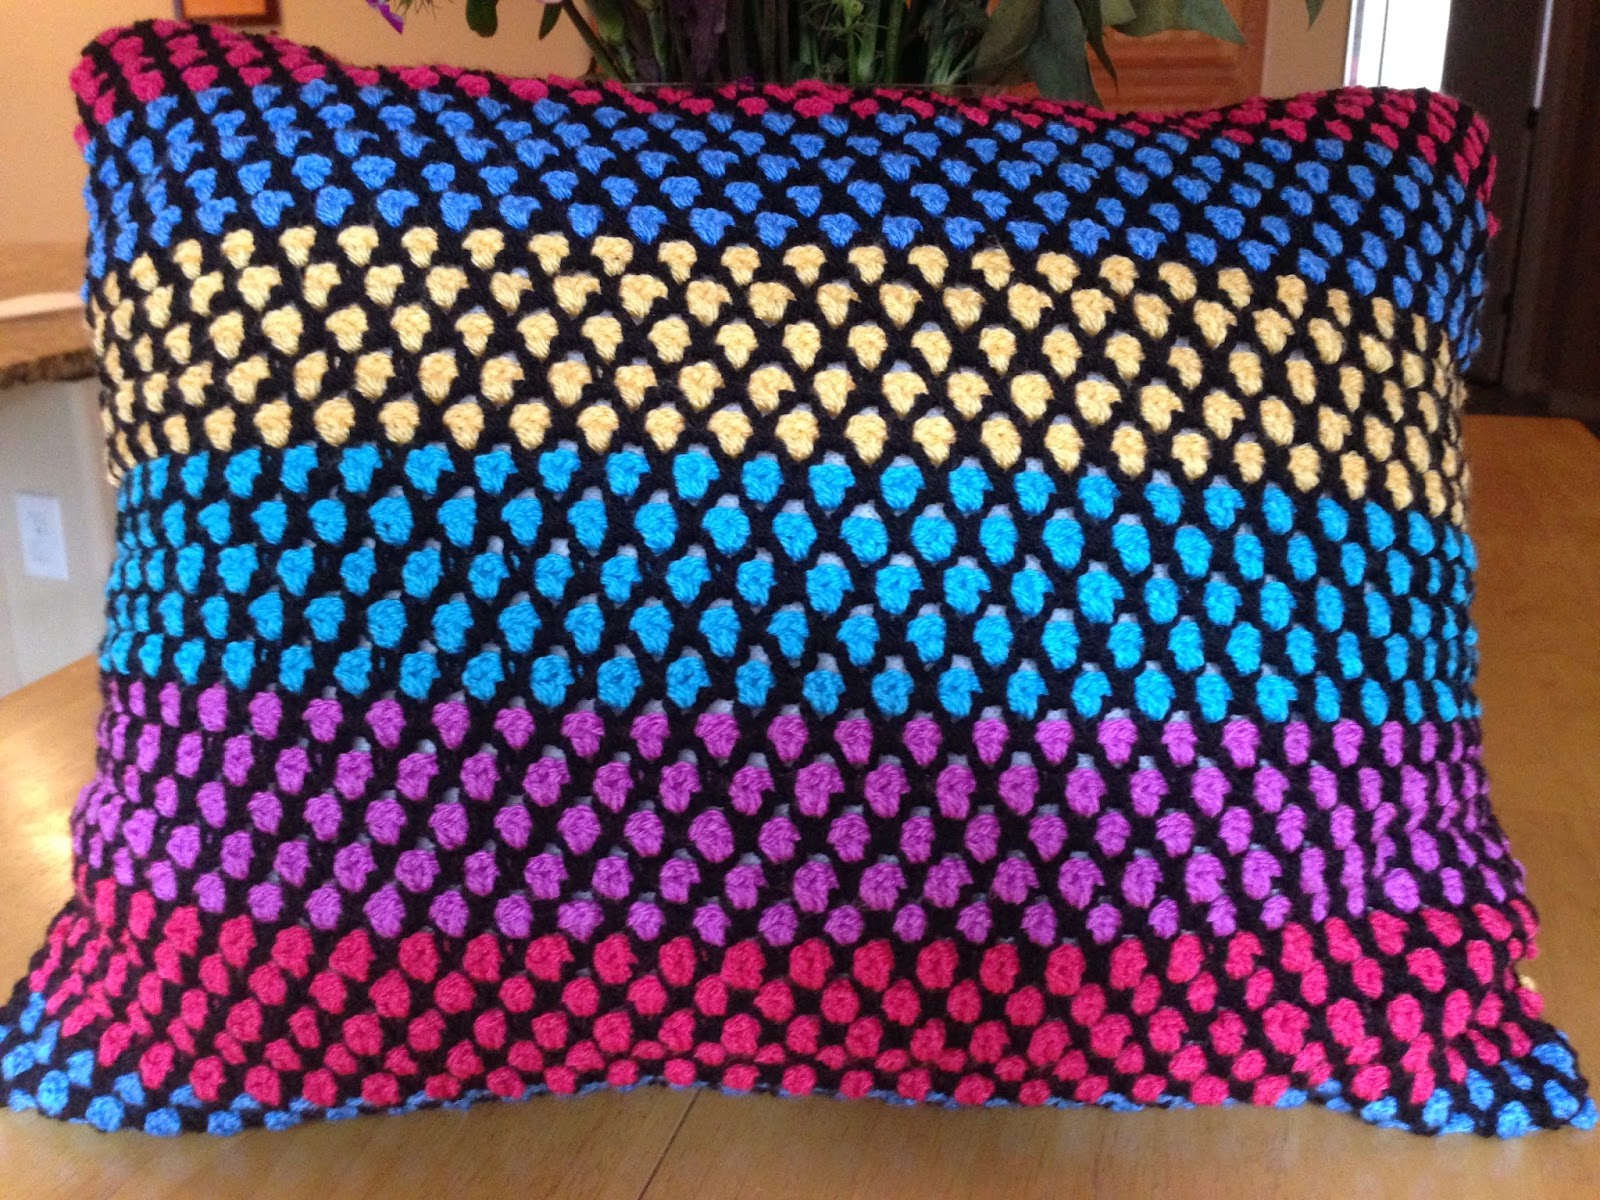 Da's Crochet Connection: Moroccan Tile Pillow